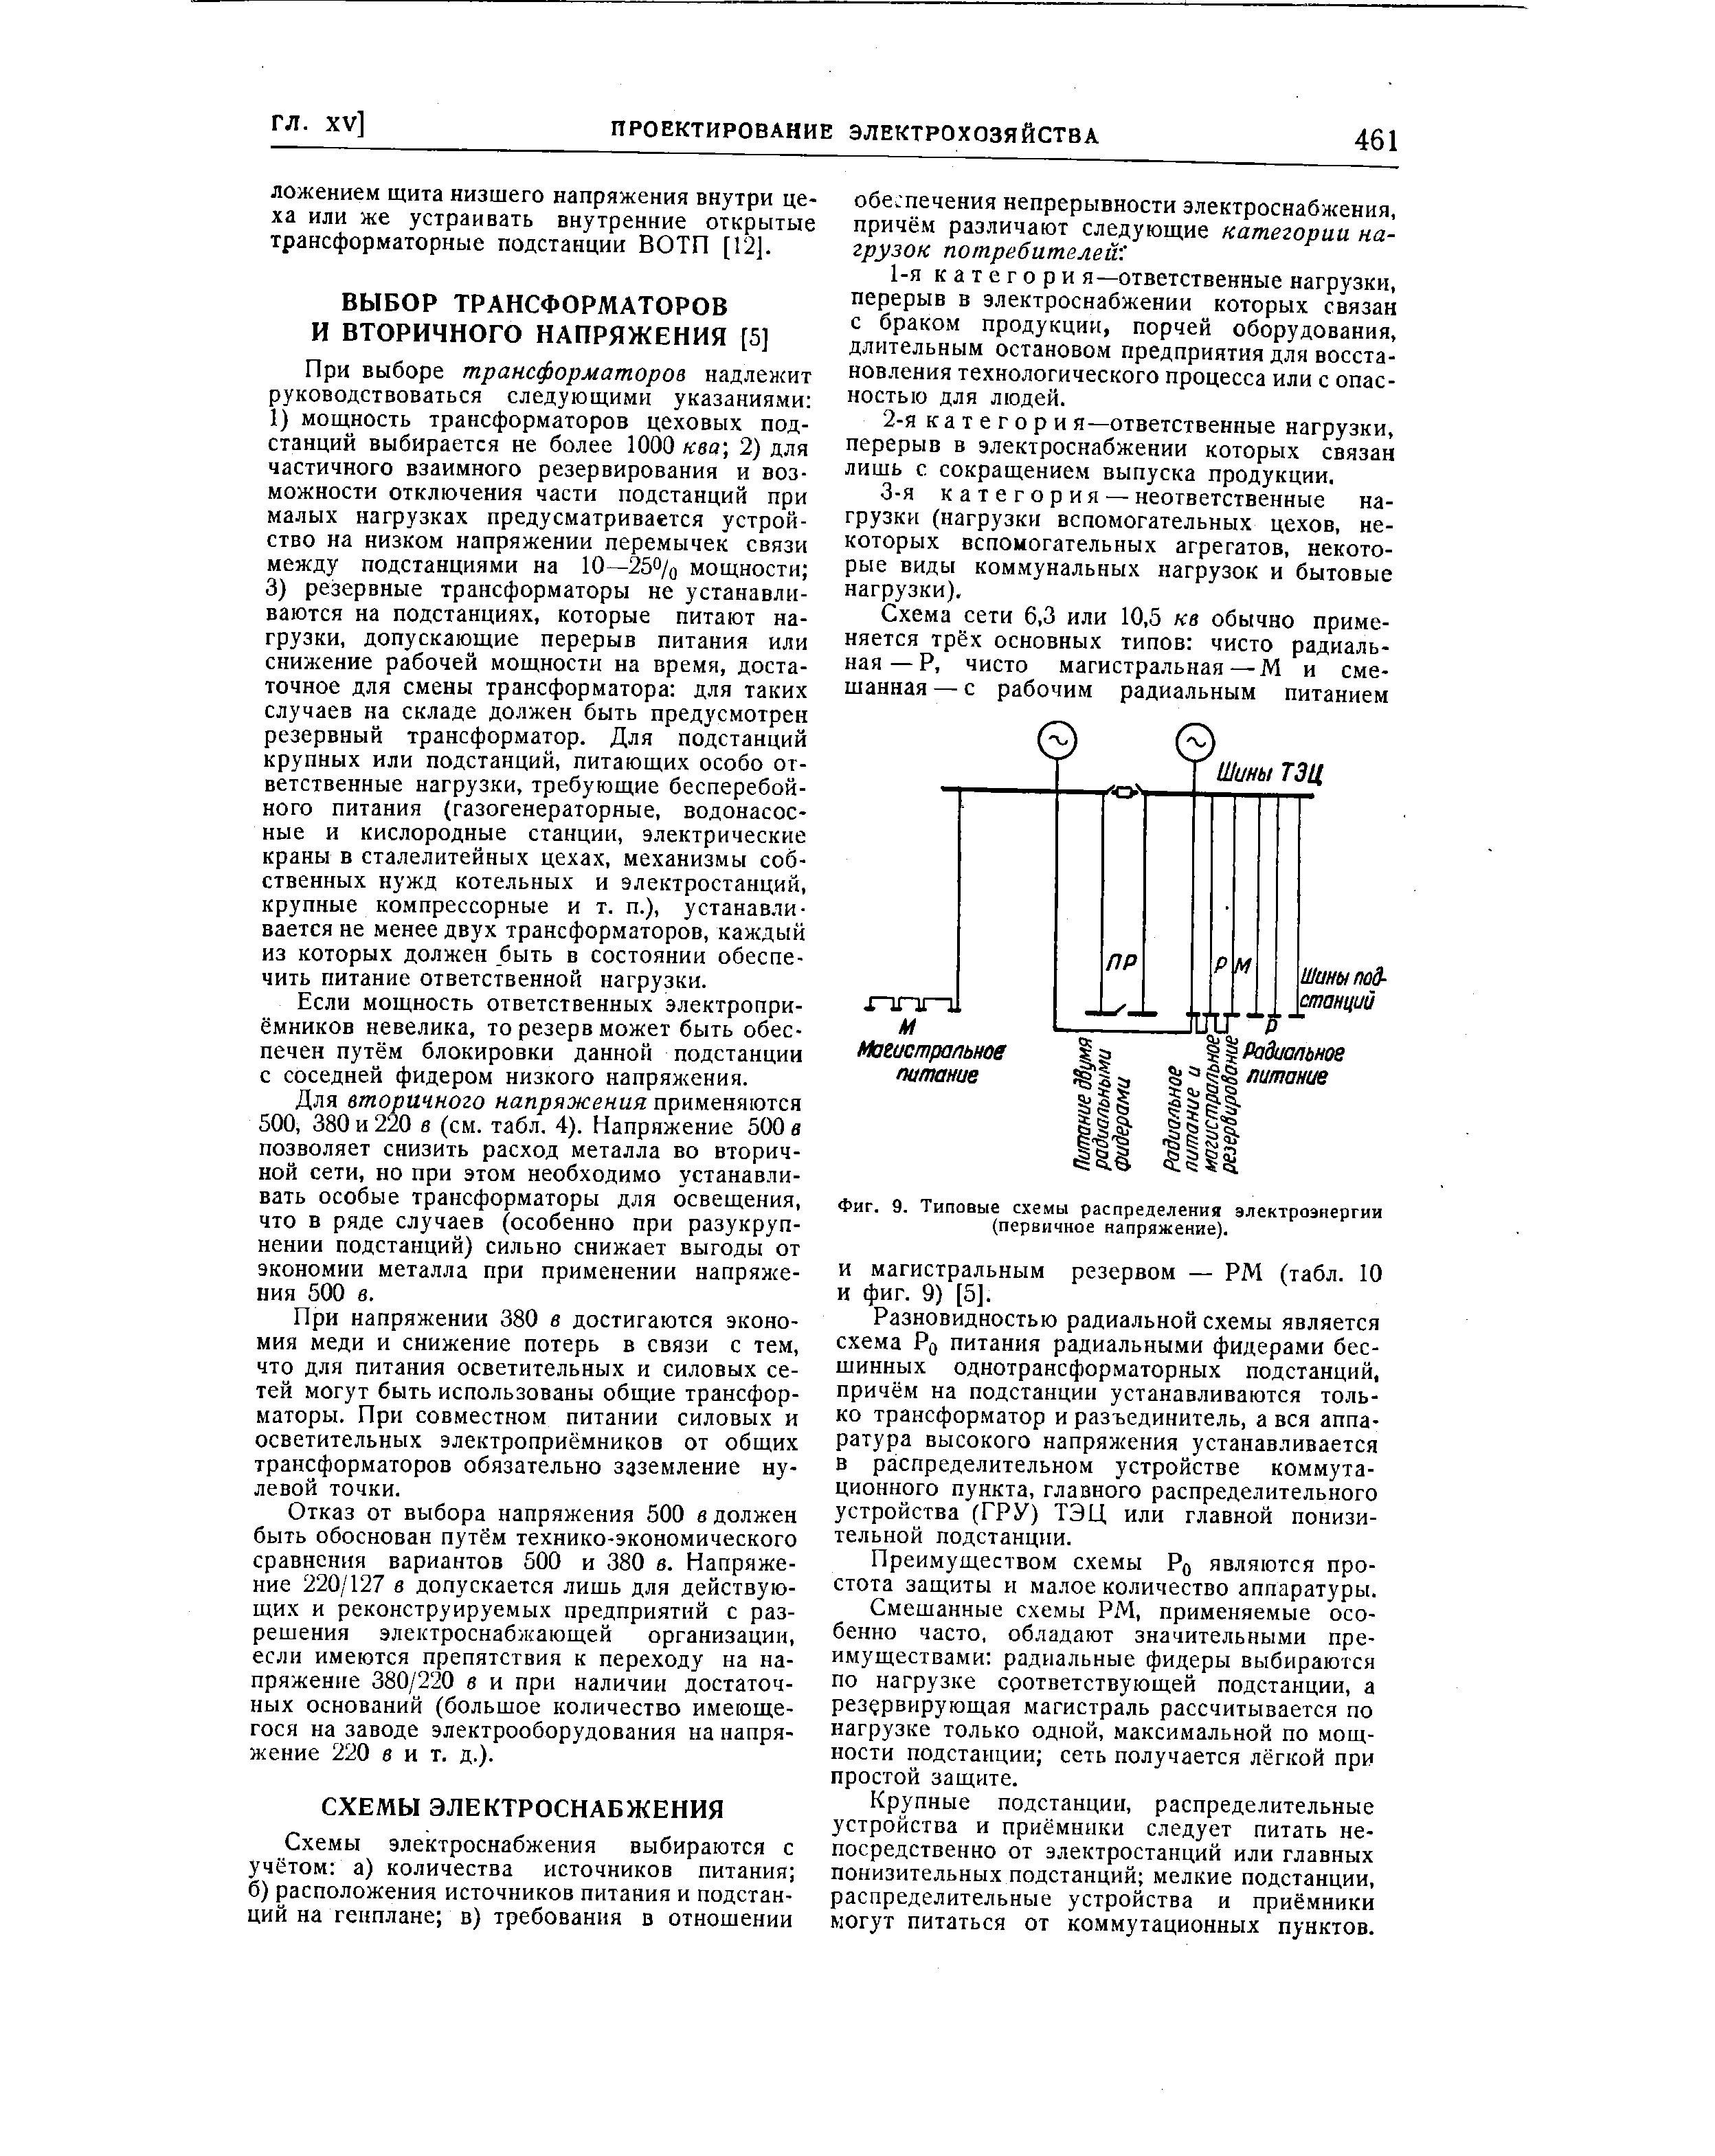 Фиг. 9. Типовые схемы распределения электроэнергии (первичное напряжение).
